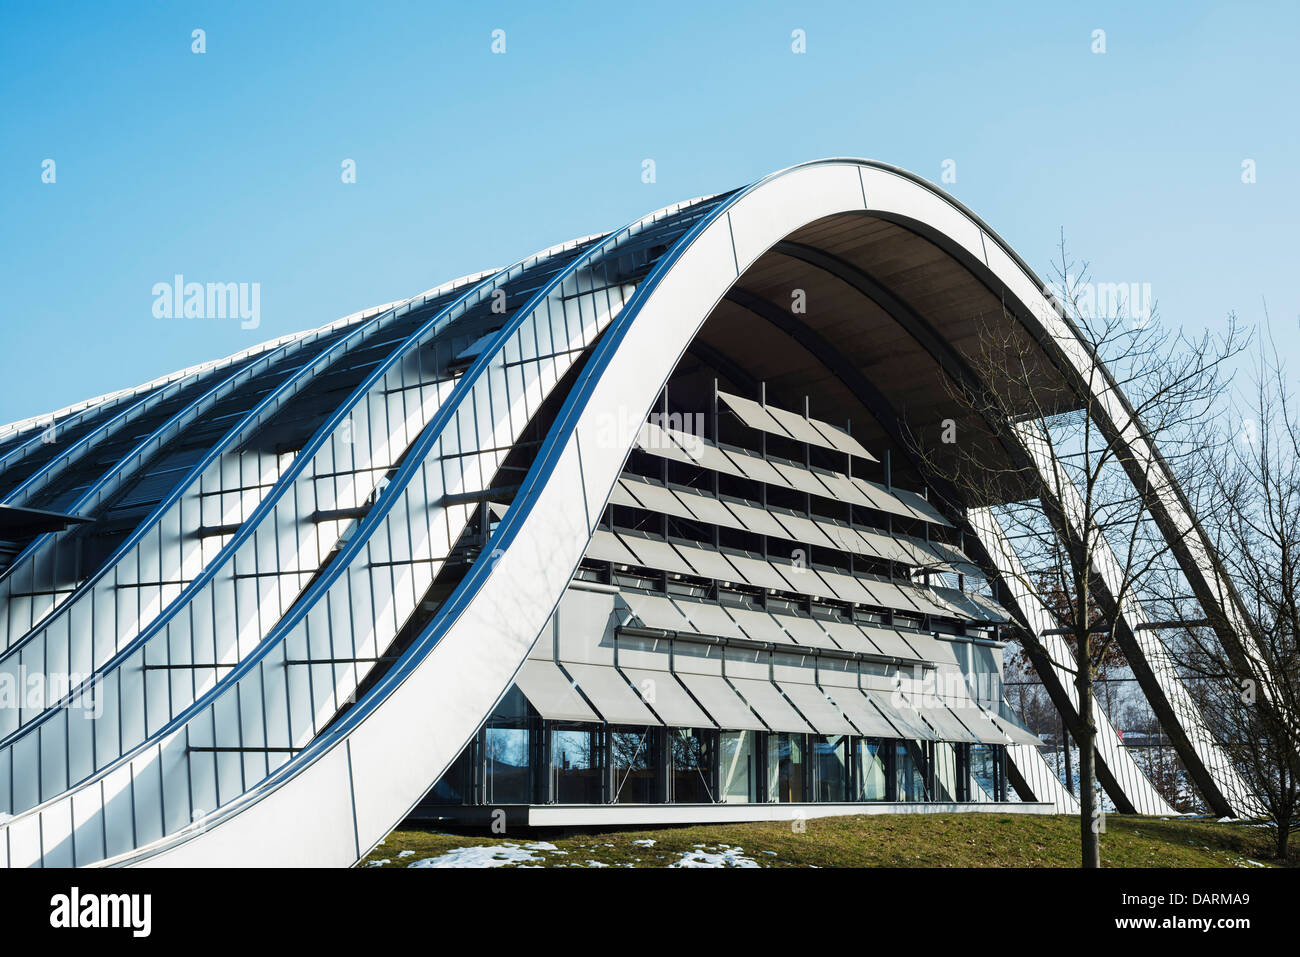 Europa, Suiza, Berna, la capital de Suiza, el Zentrum Paul Klee, museo de arte moderno, diseñado por Renzo Piano Foto de stock